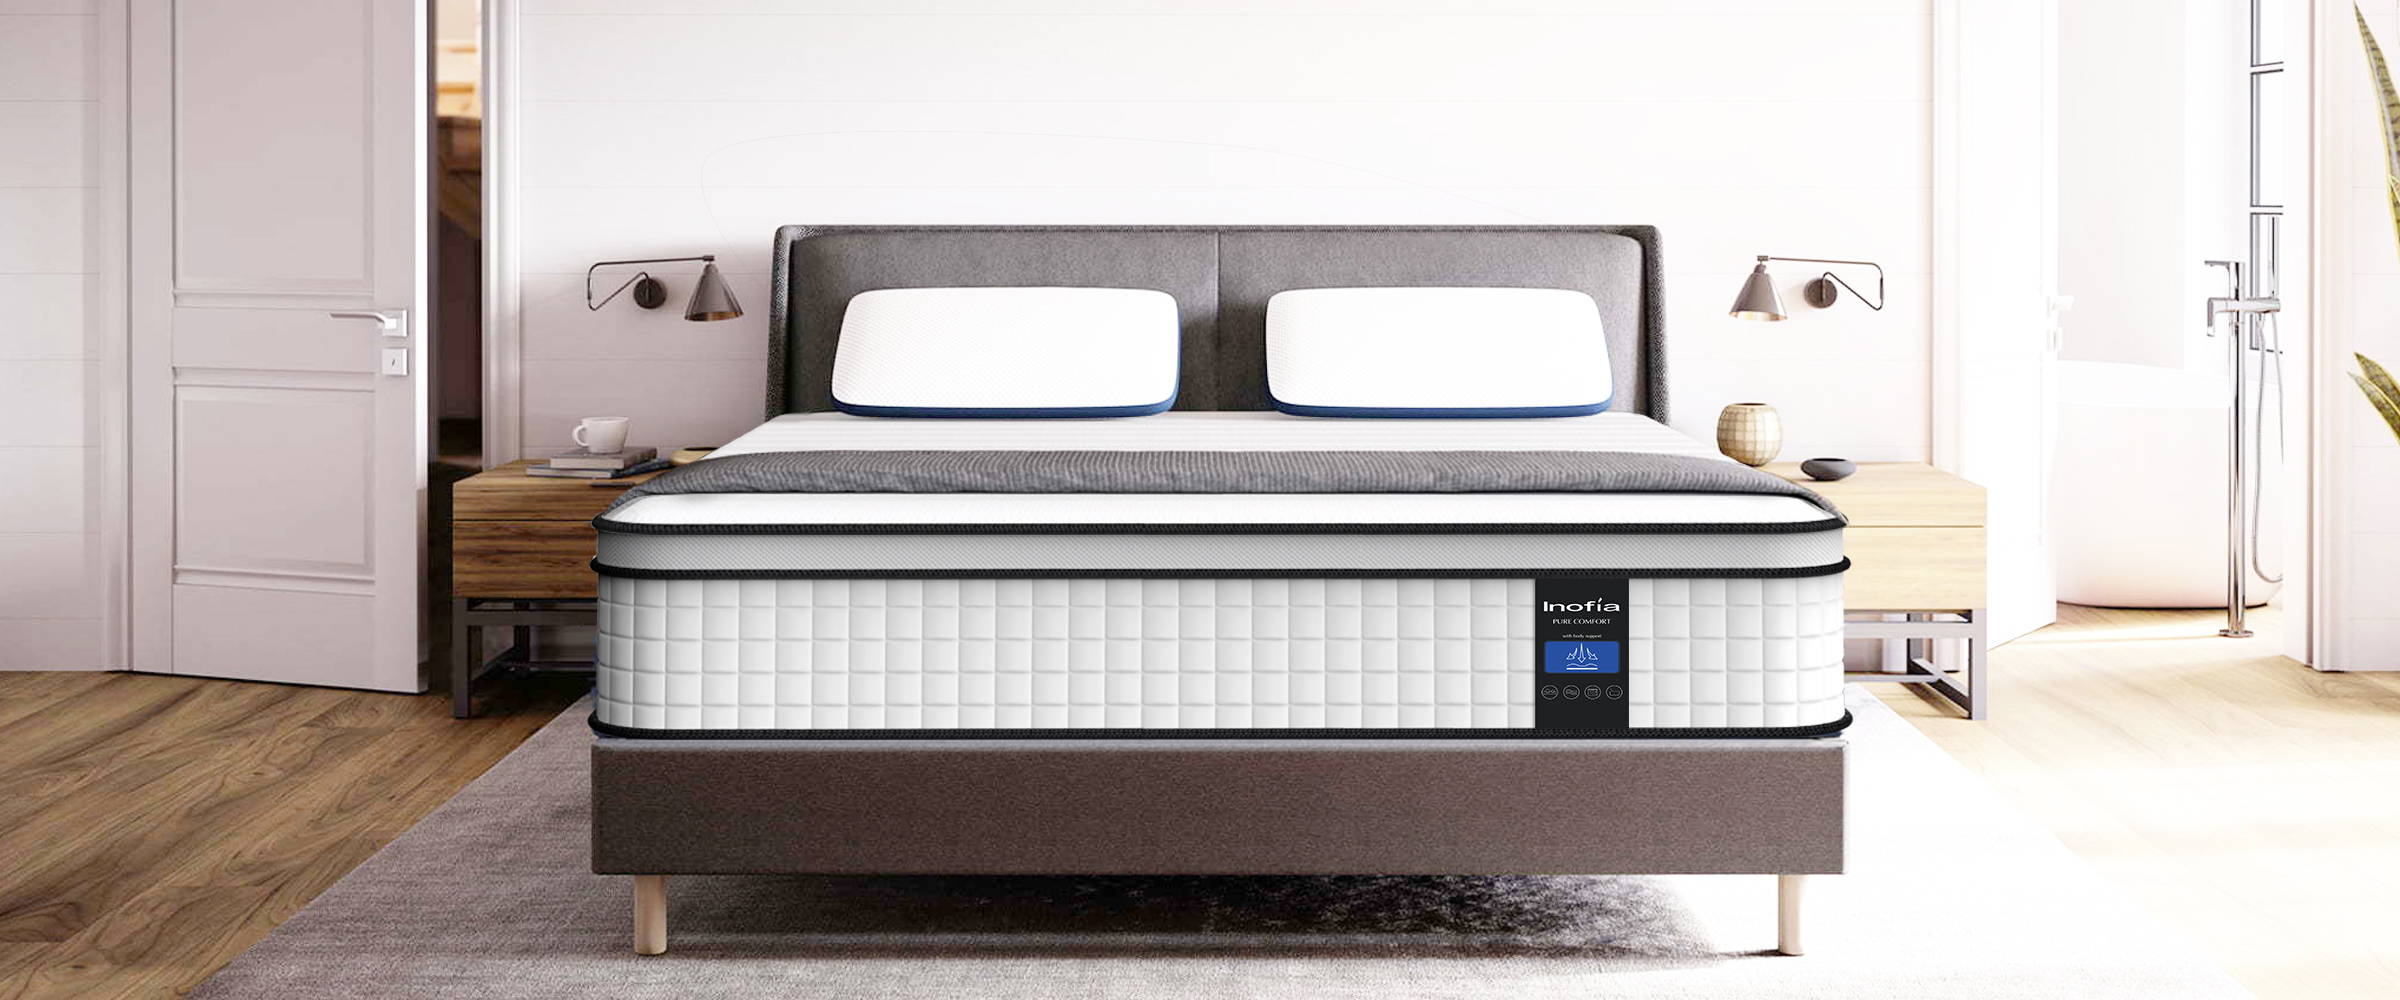 inofia pure comfort full mattress